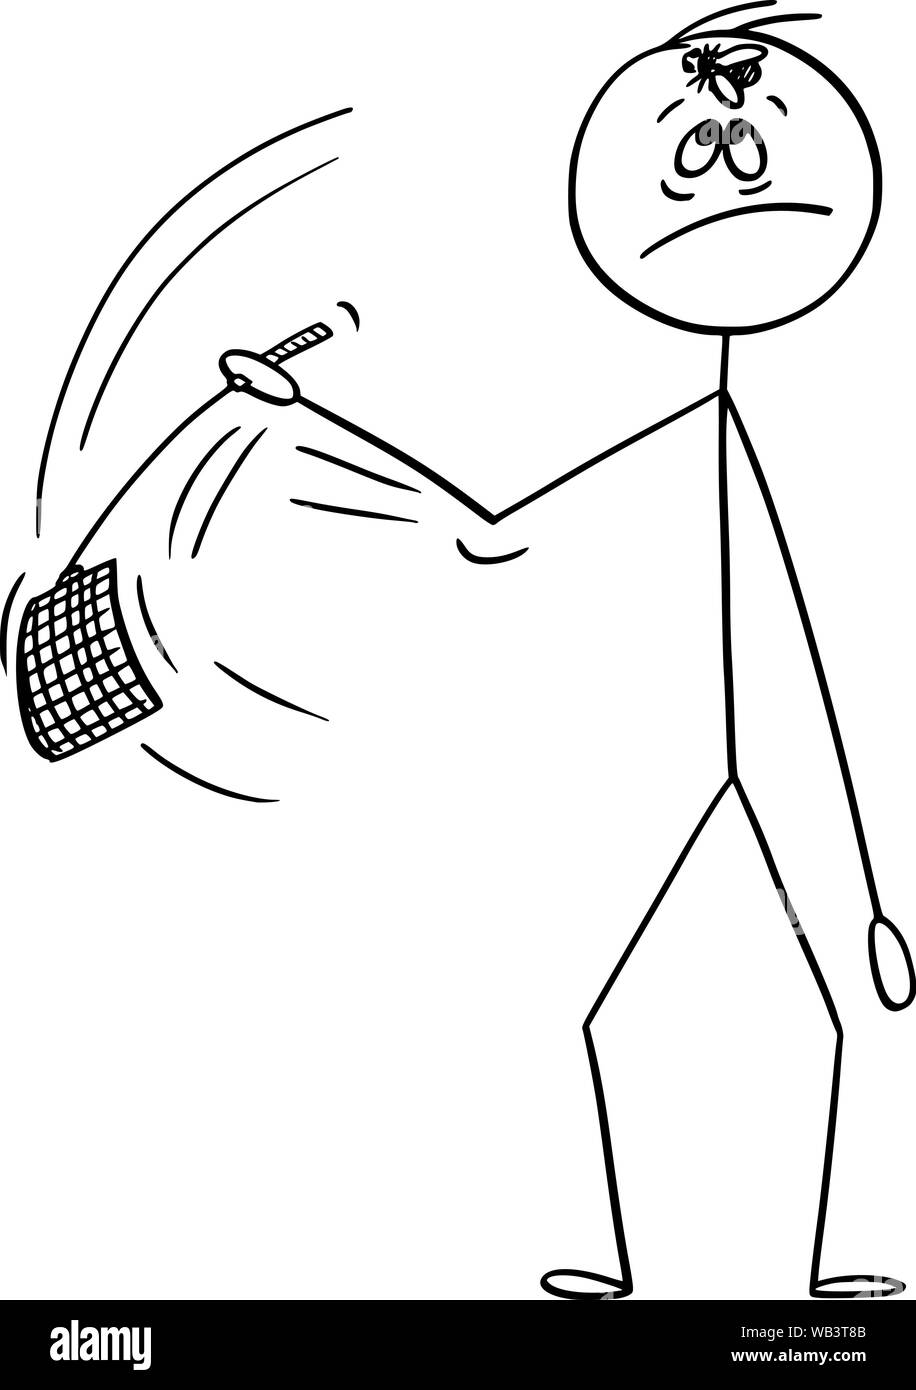 Vector cartoon stick figura disegno illustrazione concettuale dell'uomo andando a swat fly seduto sul fronte hos con swatter, enca o fly-flap. Illustrazione Vettoriale